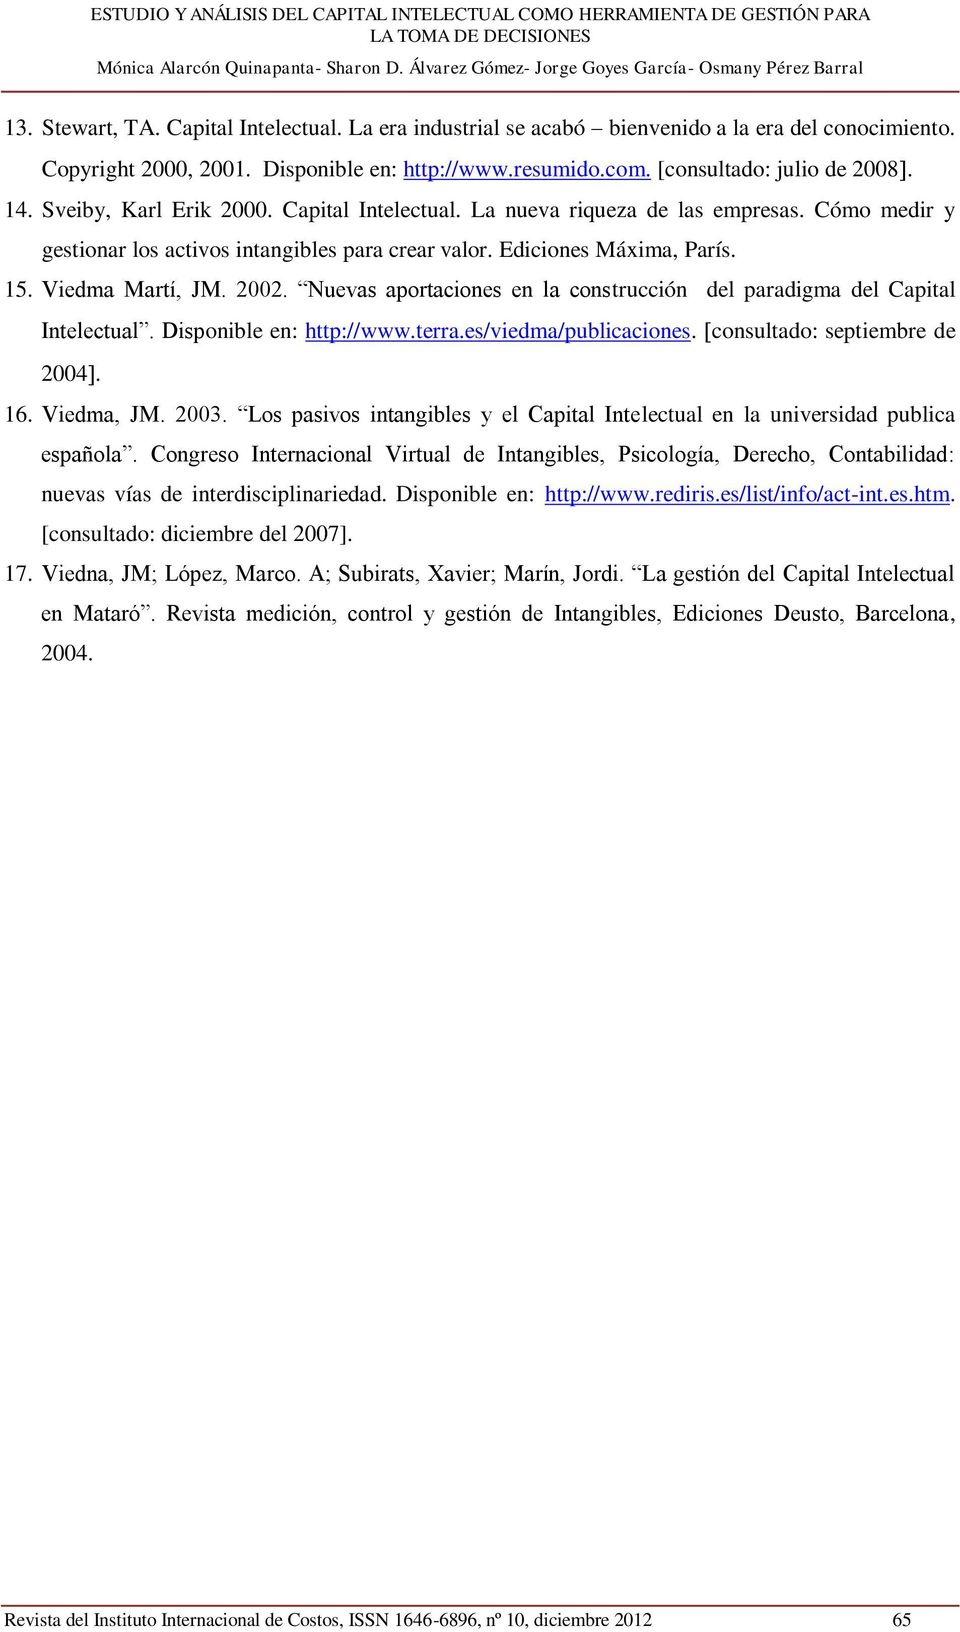 Nuevas aportaciones en la construcción del paradigma del Capital Intelectual. Disponible en: http://www.terra.es/viedma/publicaciones. consultado: septiembre de 2004. 16. Viedma, JM. 2003.